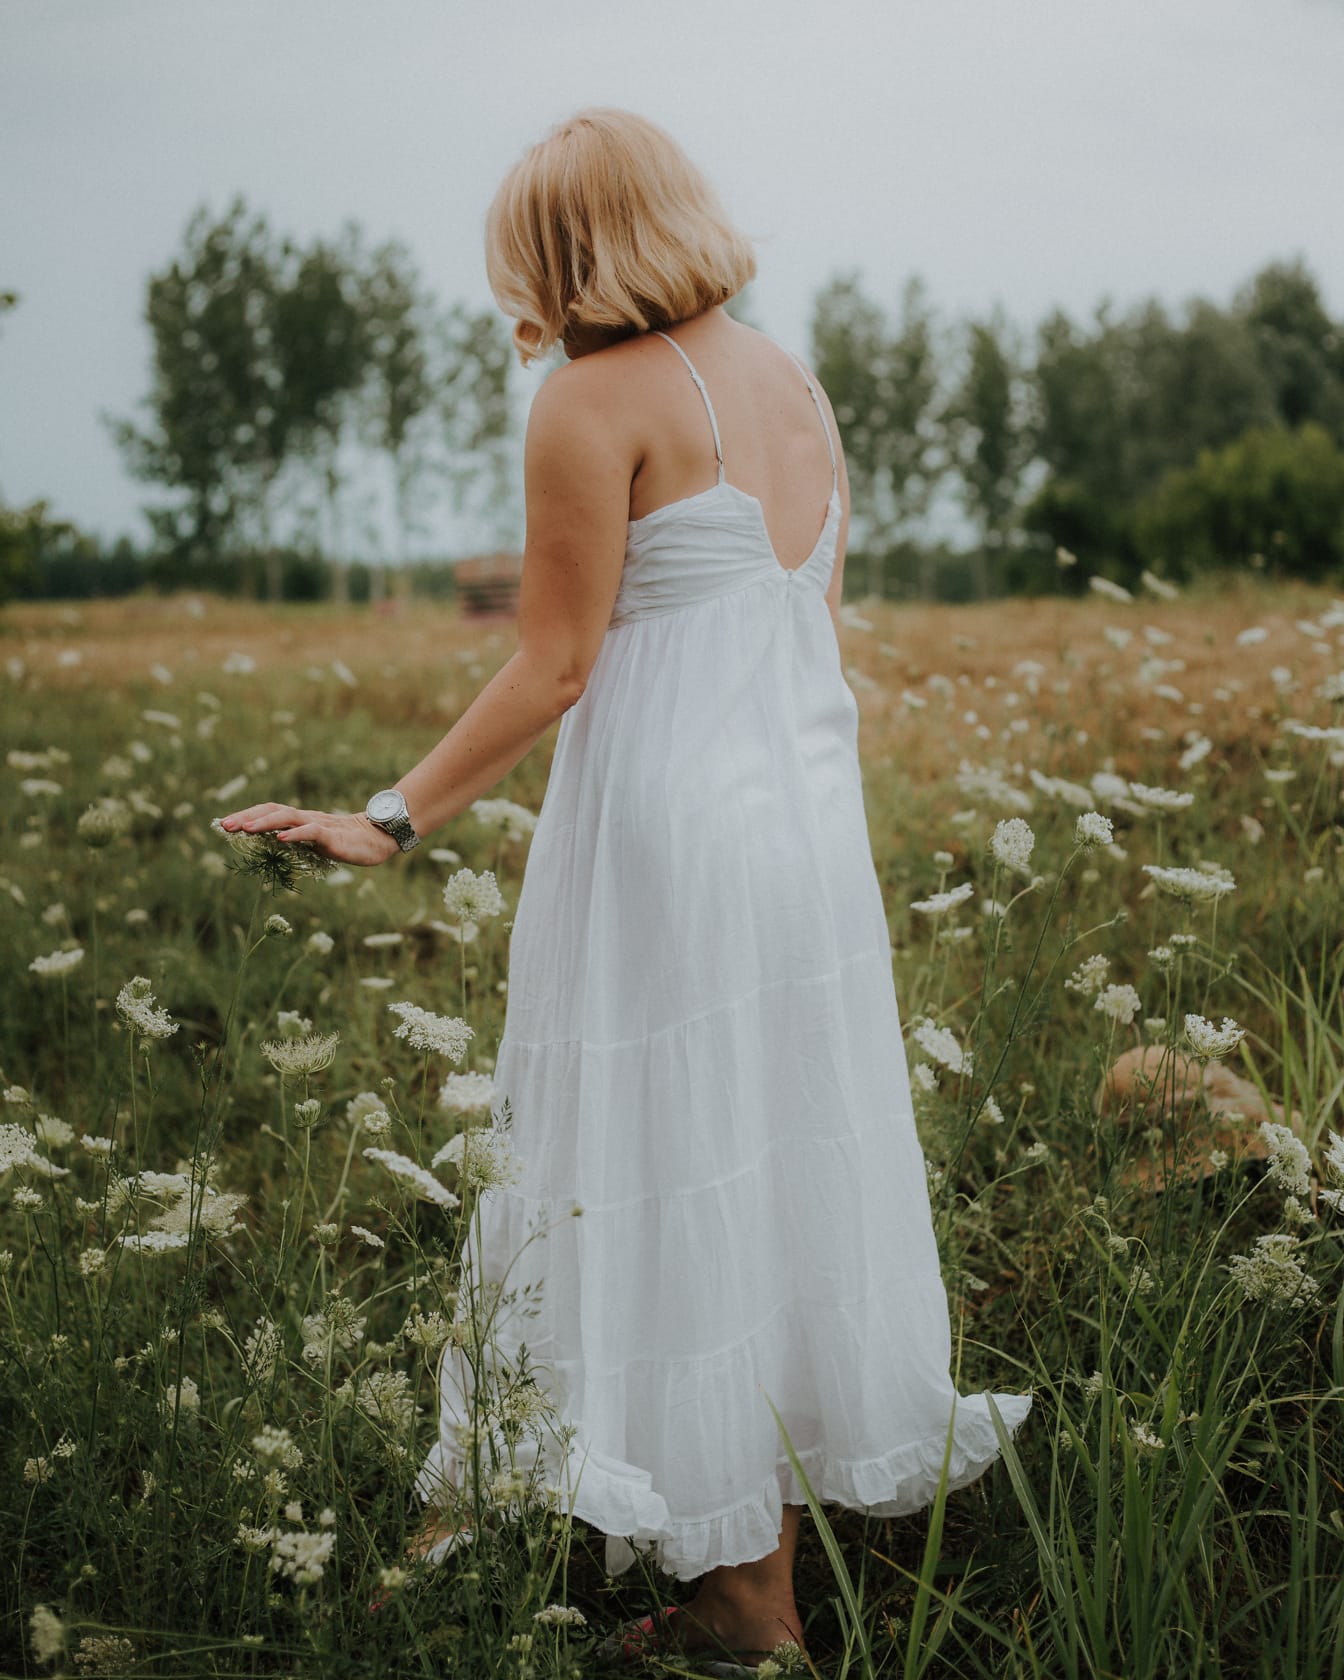 Người phụ nữ tóc vàng trên đồng cỏ mặc váy trắng